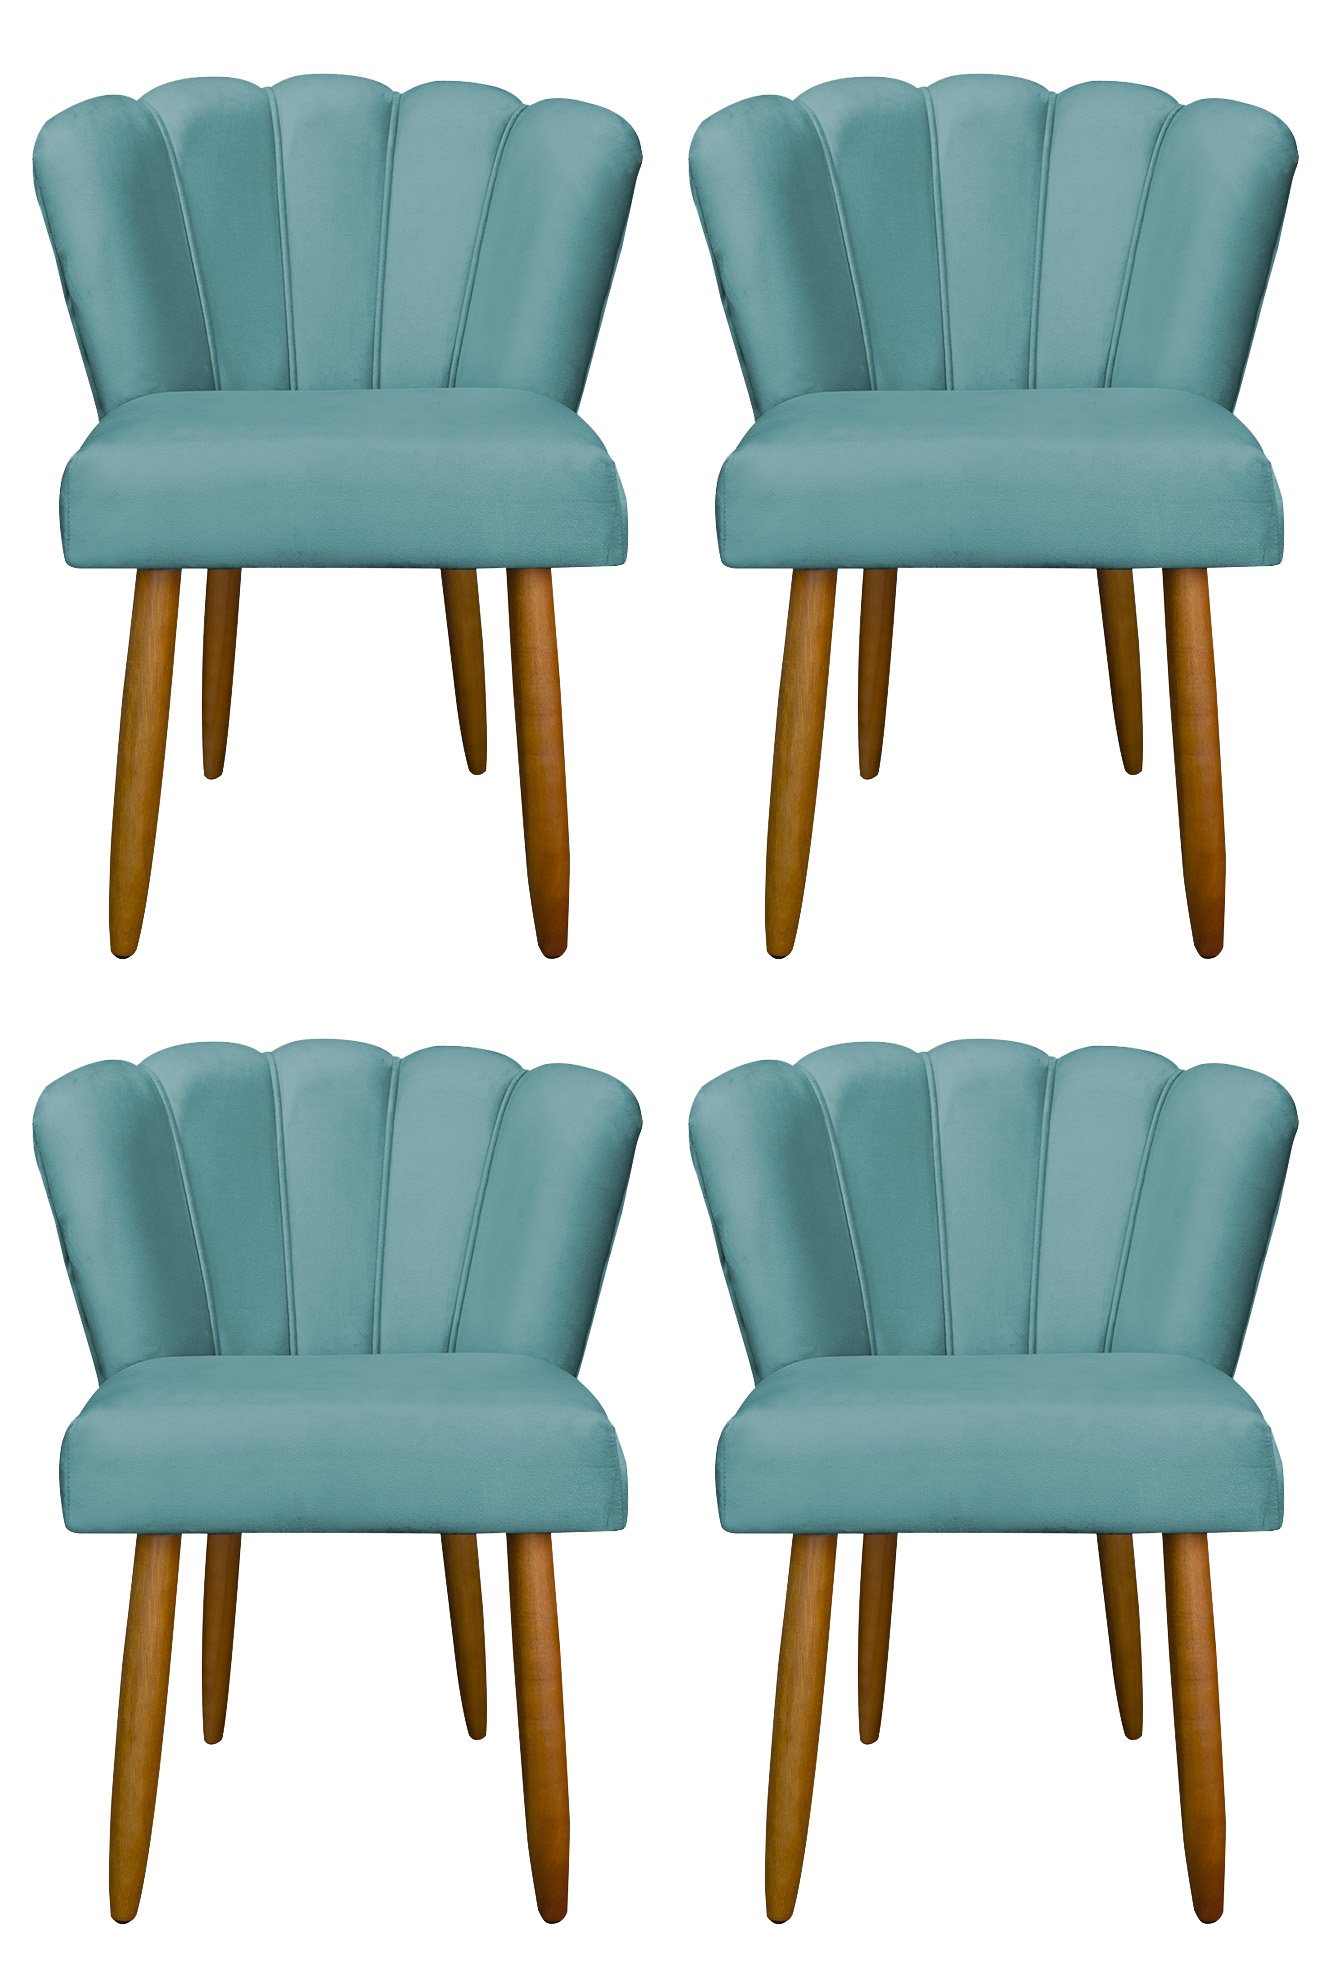 Kit 4 Cadeira para Mesa de Jantar Modelo Flor Suede:azul Turquesa